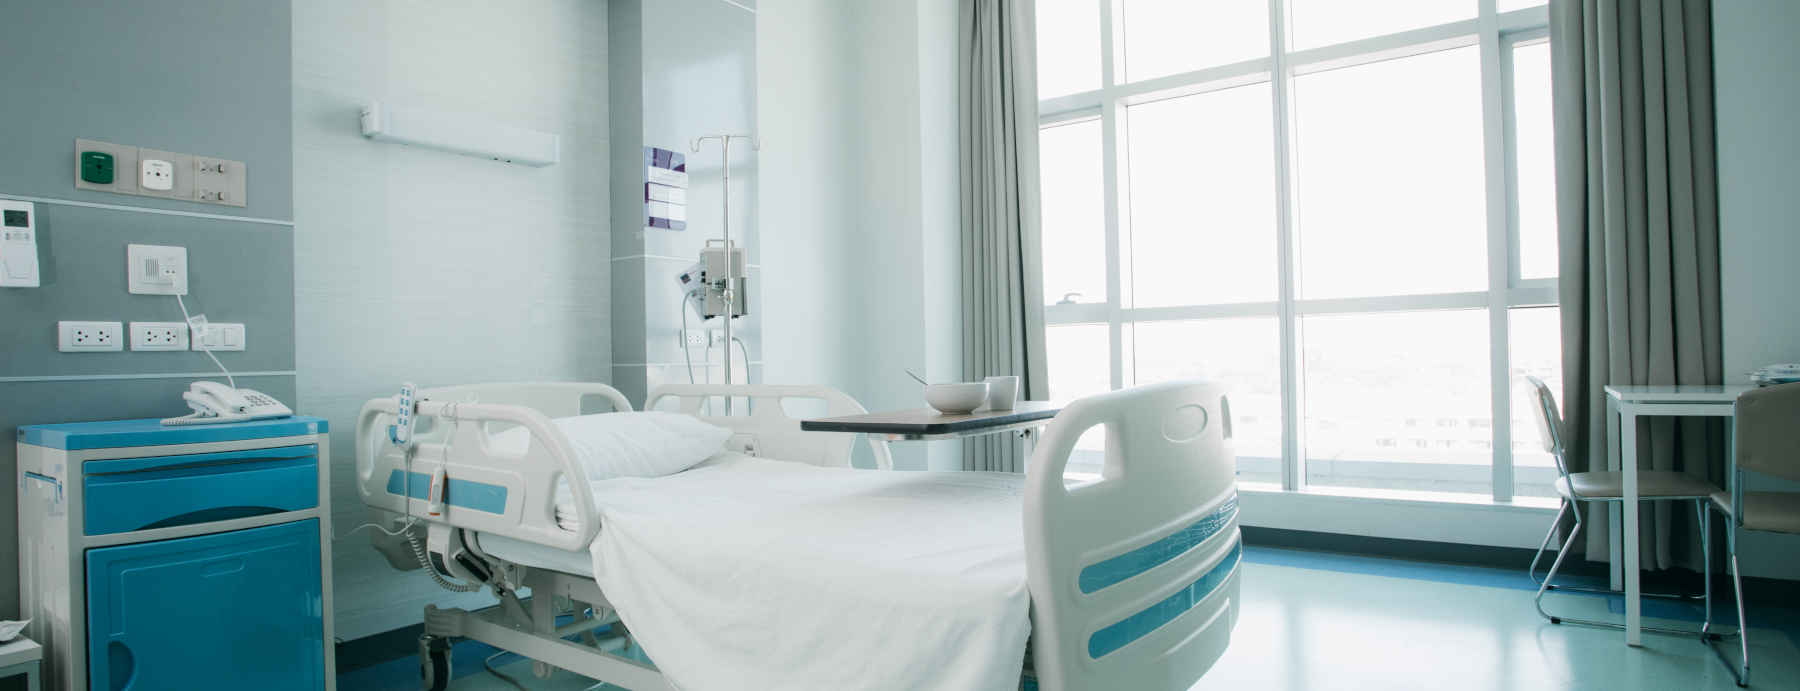 La rilevanza della qualità dell'aria indoor negli ambienti ospedalieri